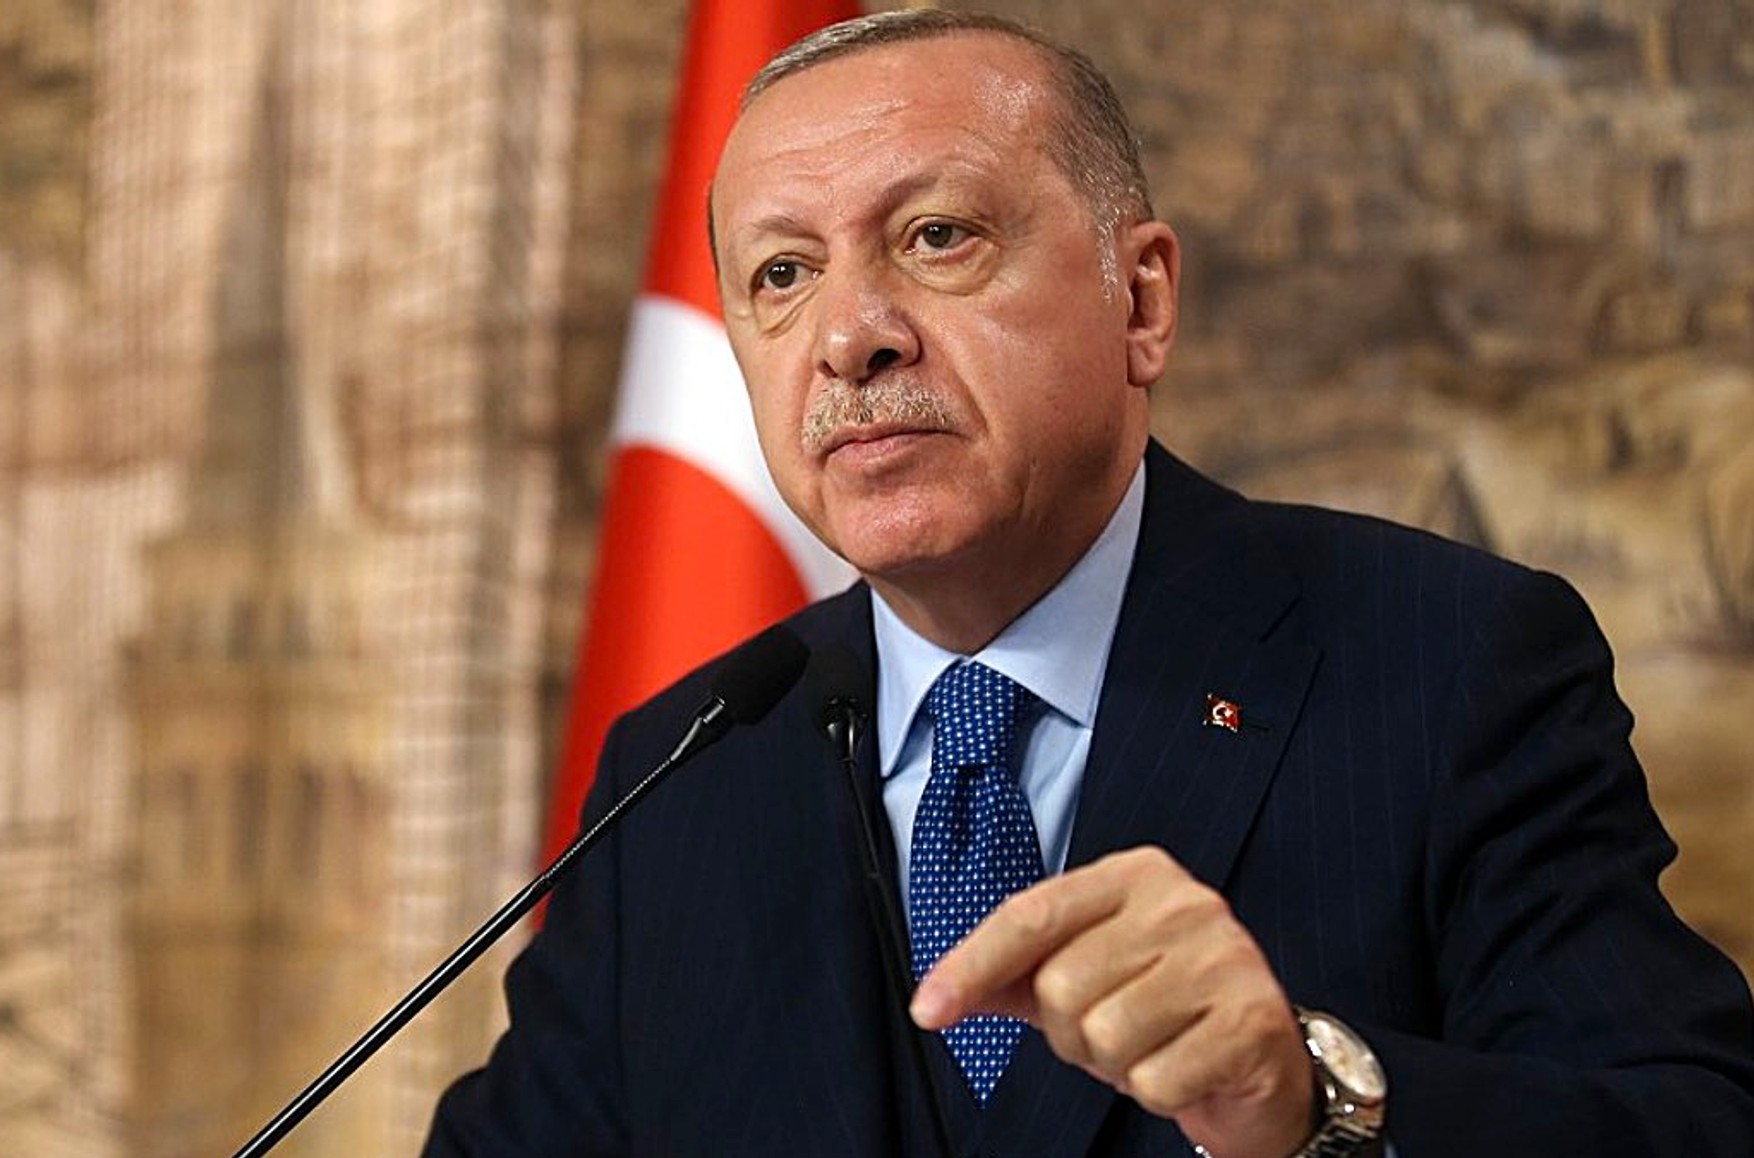 «Операция Эрдогана в Сирии — это проба сил, что скажут США и Россия» — арабист Марианна Беленькая